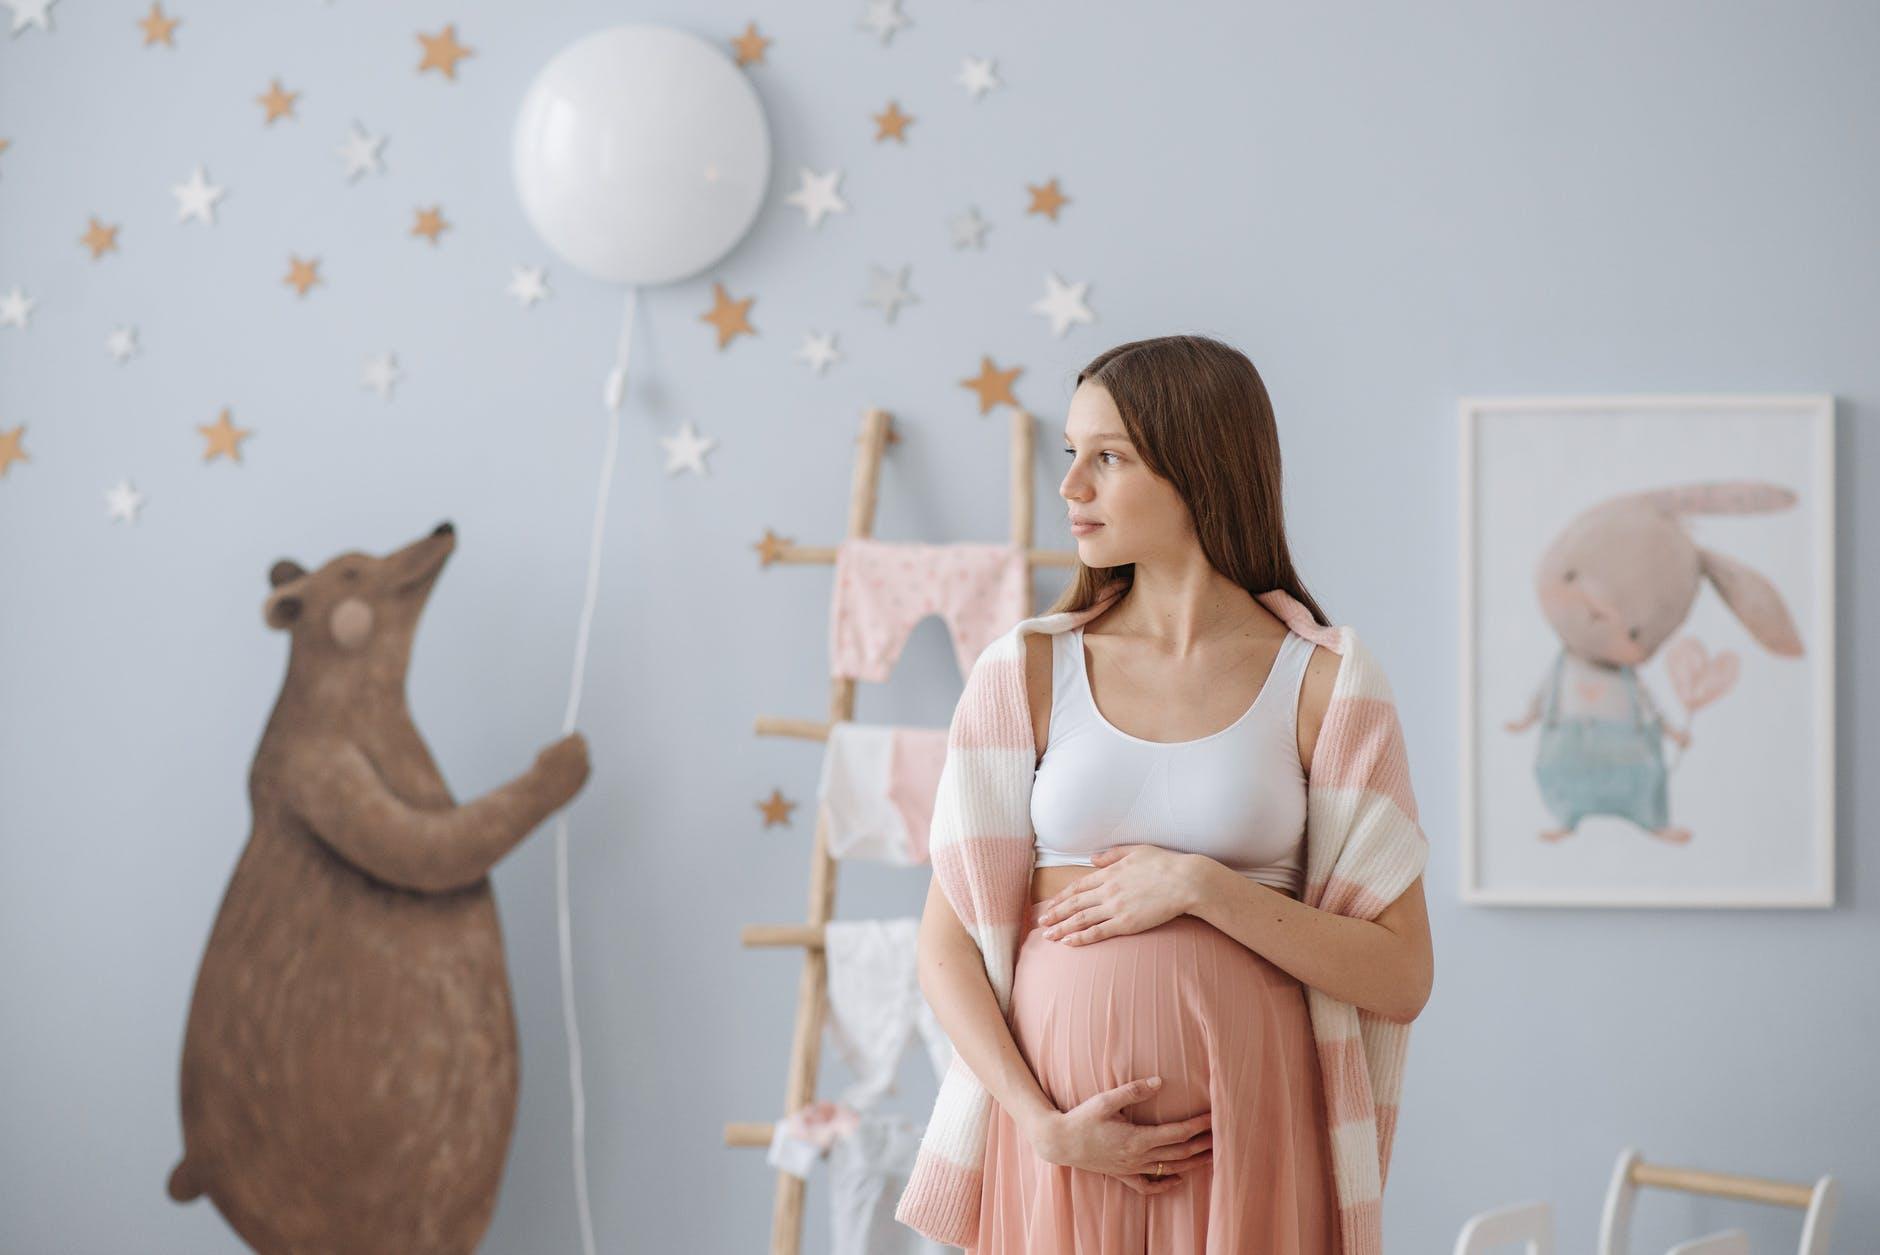 Муж бросил беременную: как пережить предательство и начать жить дальше